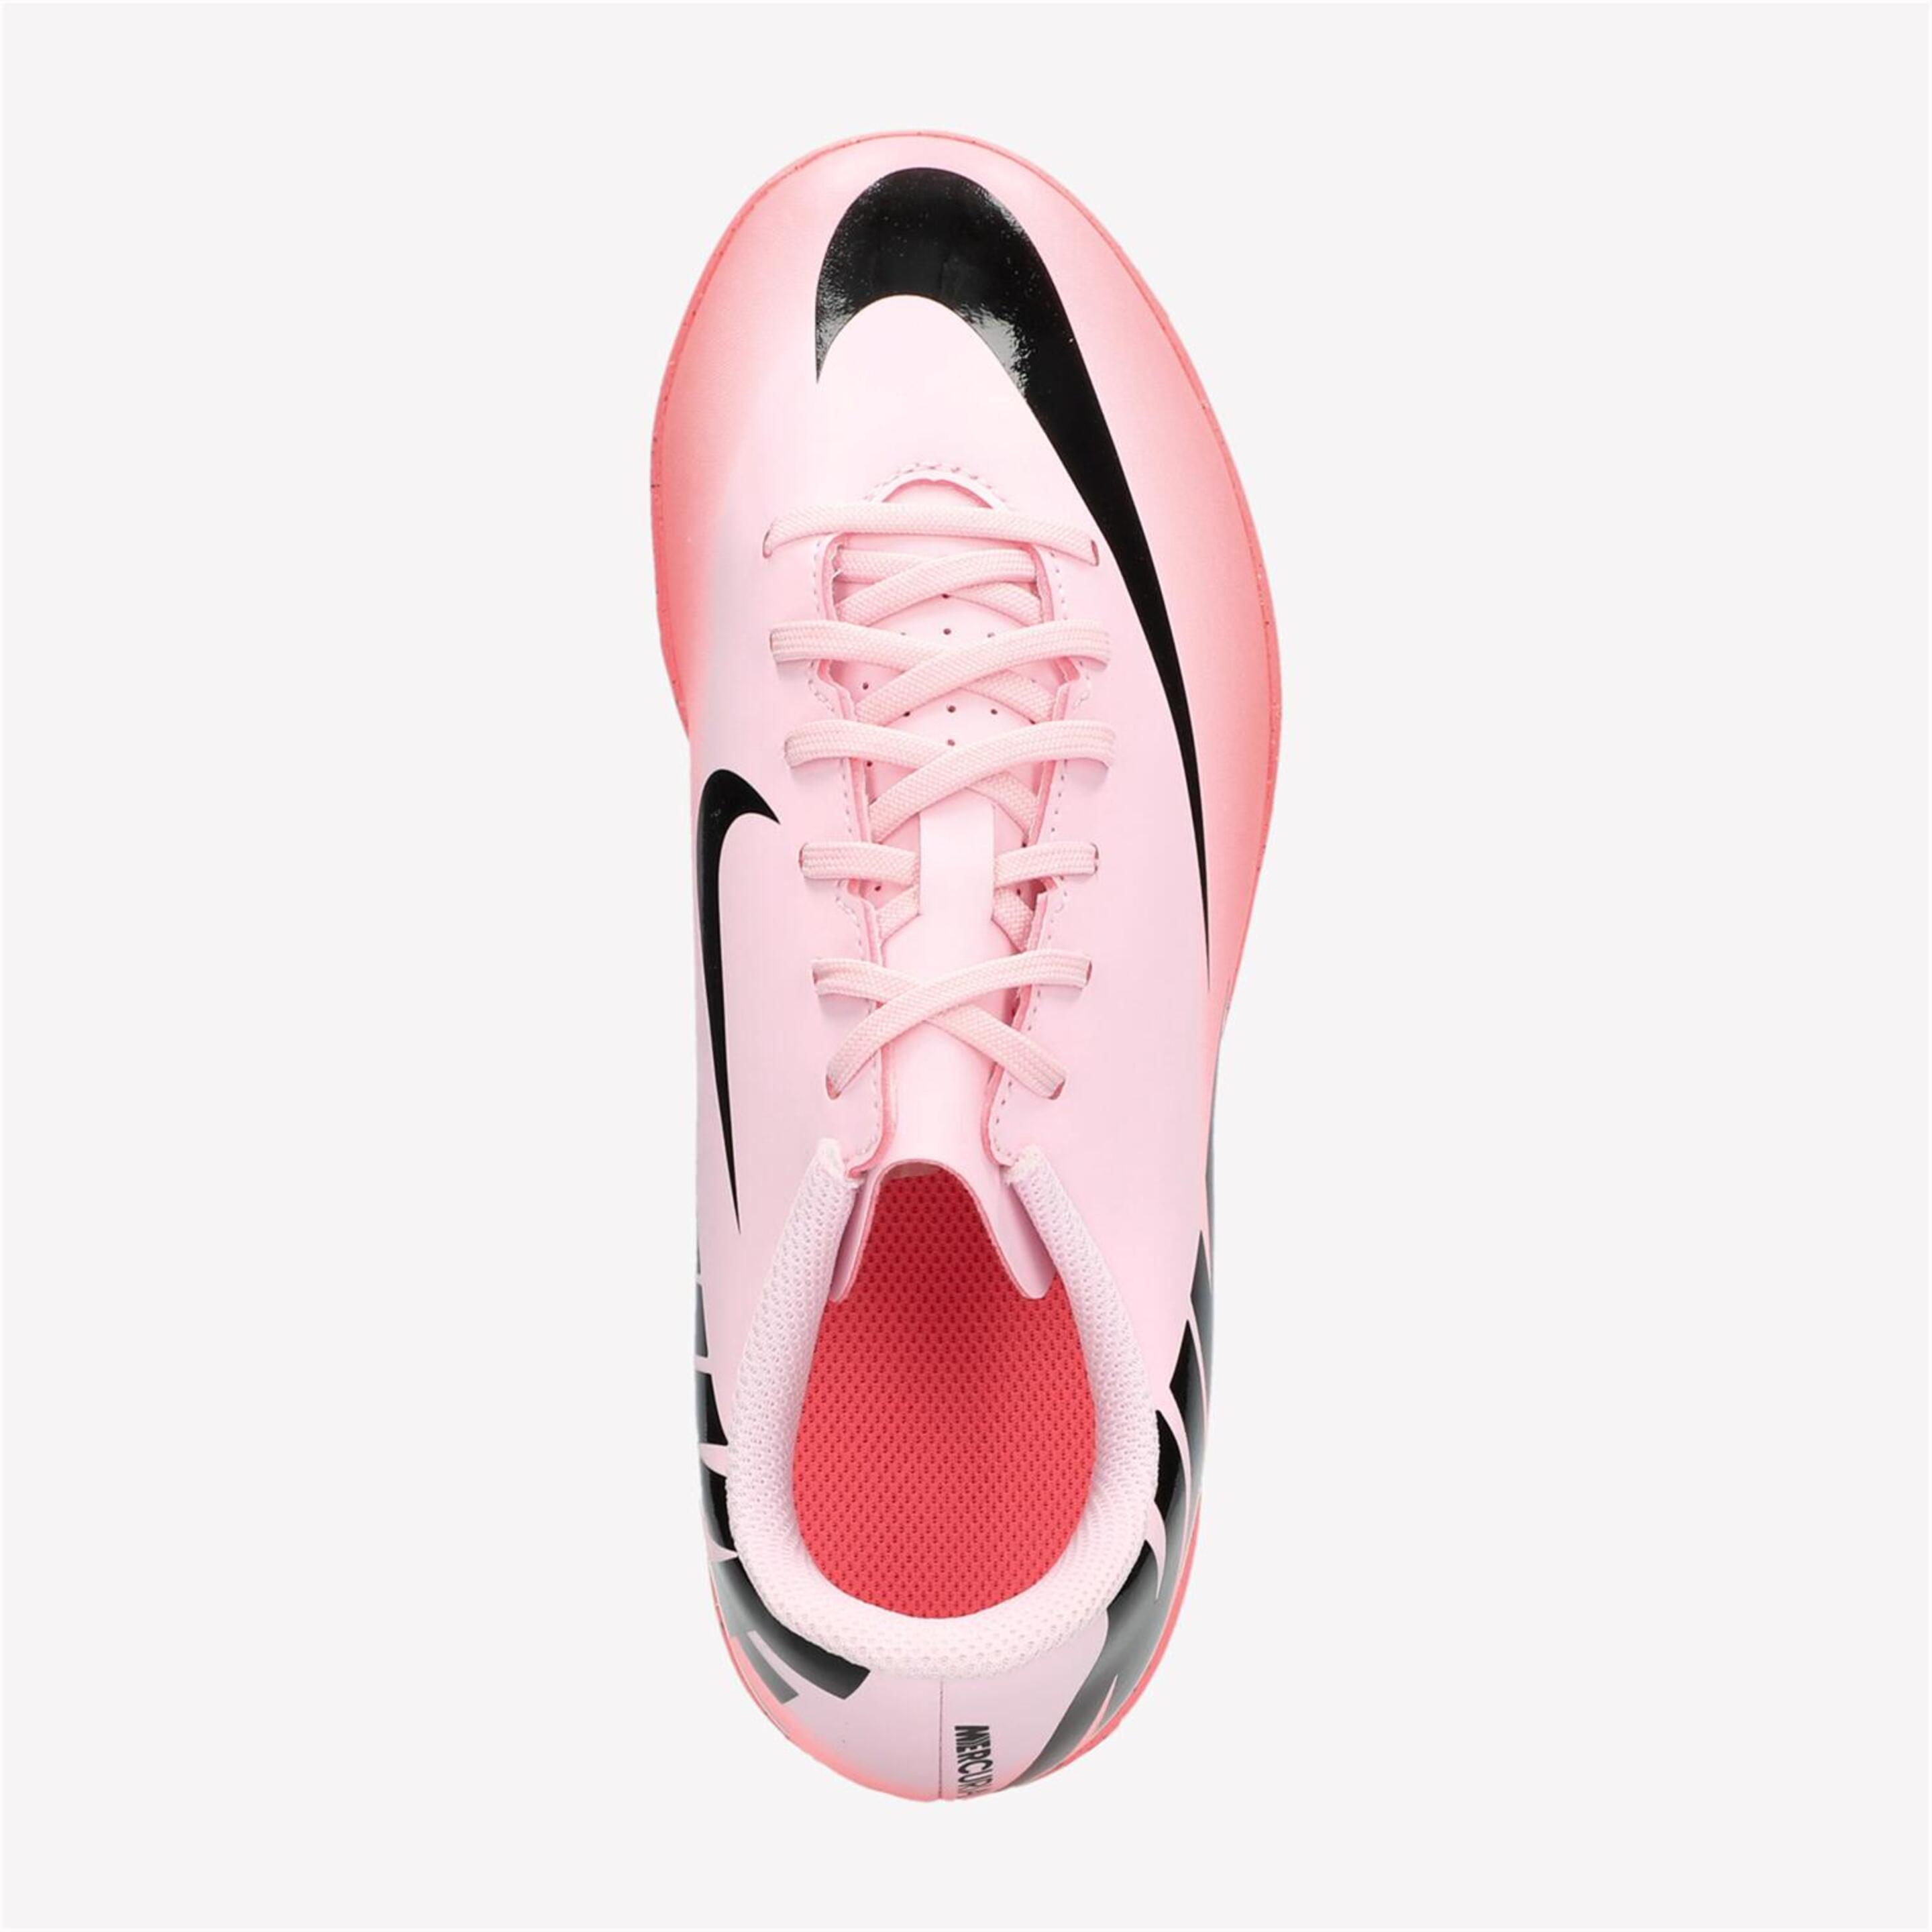 Nike Mercurial Vp Club - Rosa - Botas Fútbol Niños